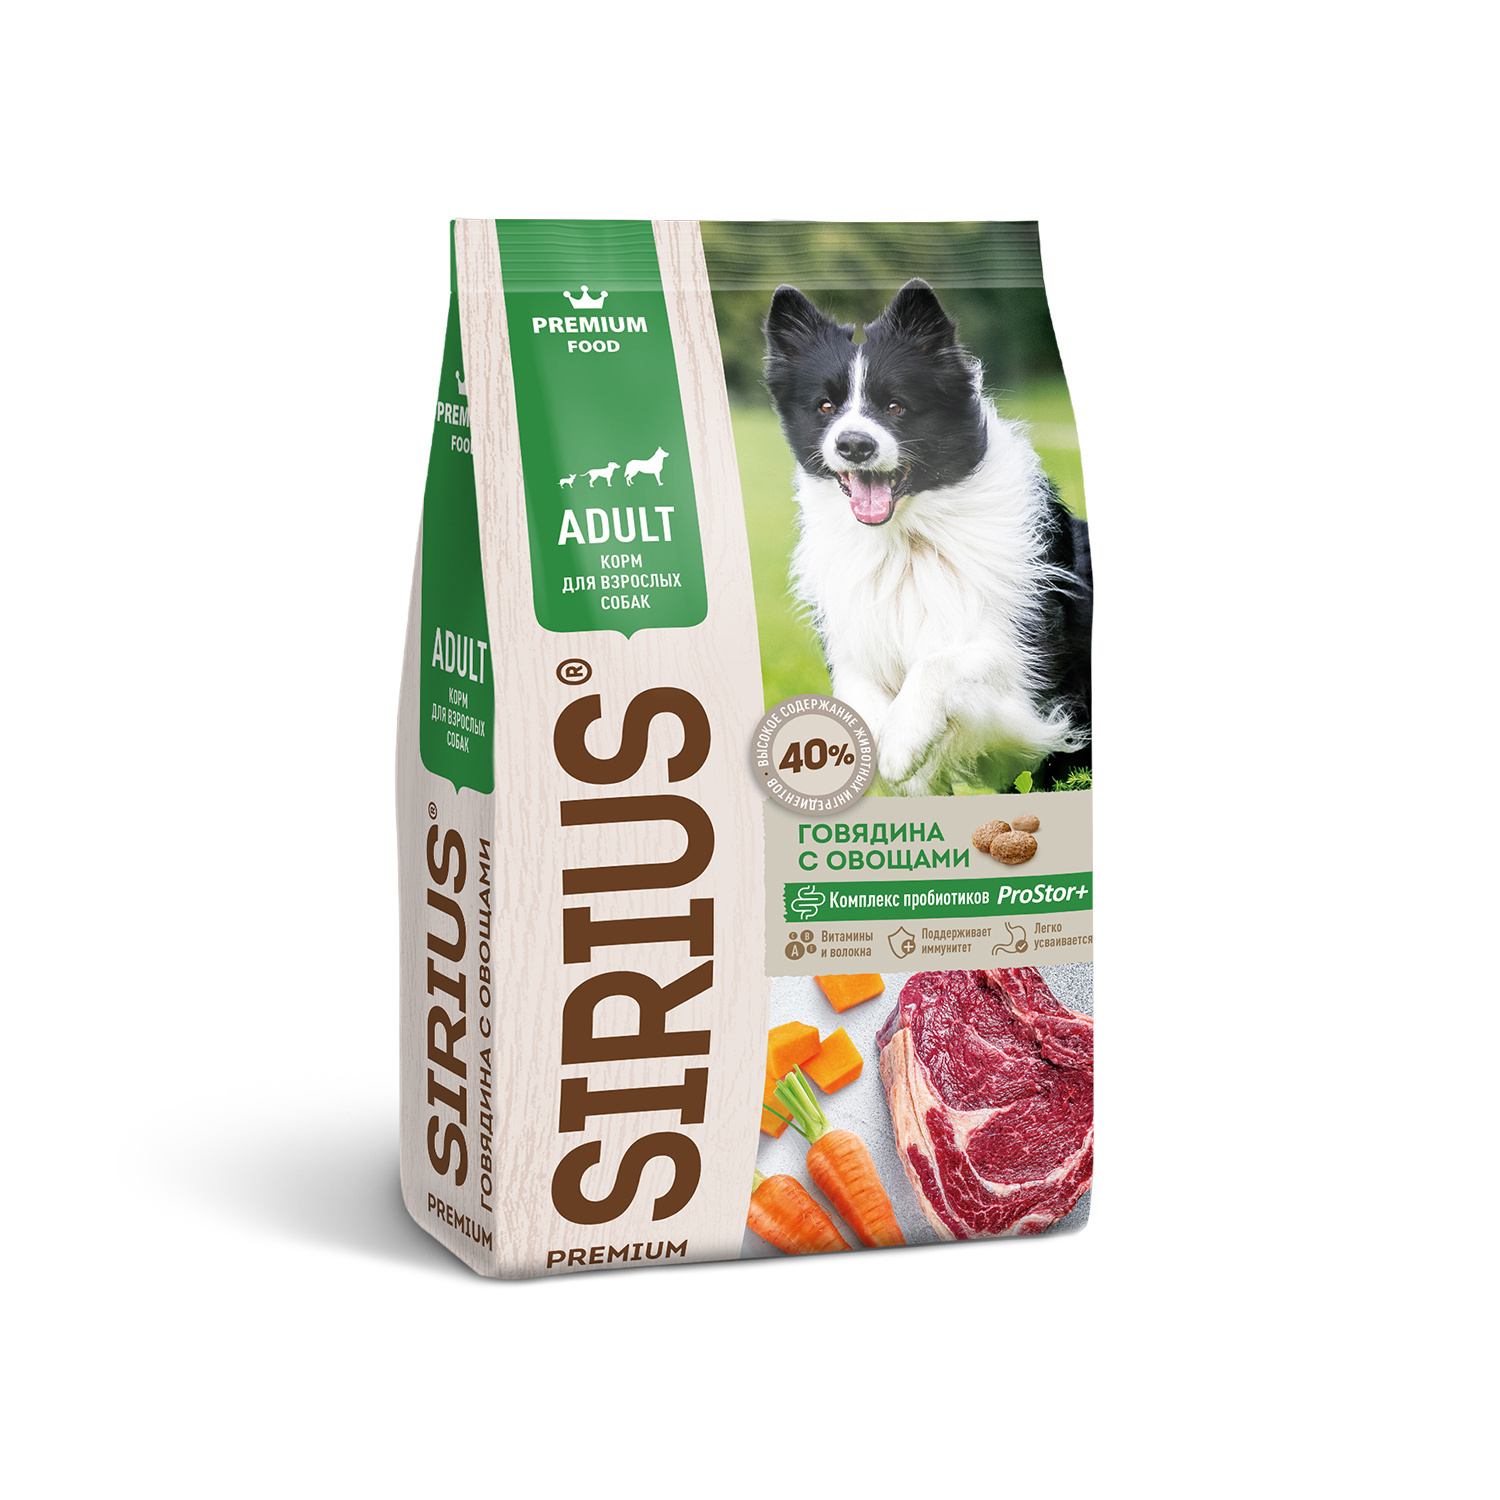 Sirius Sirius сухой корм для собак, говядина с овощами (2 кг)